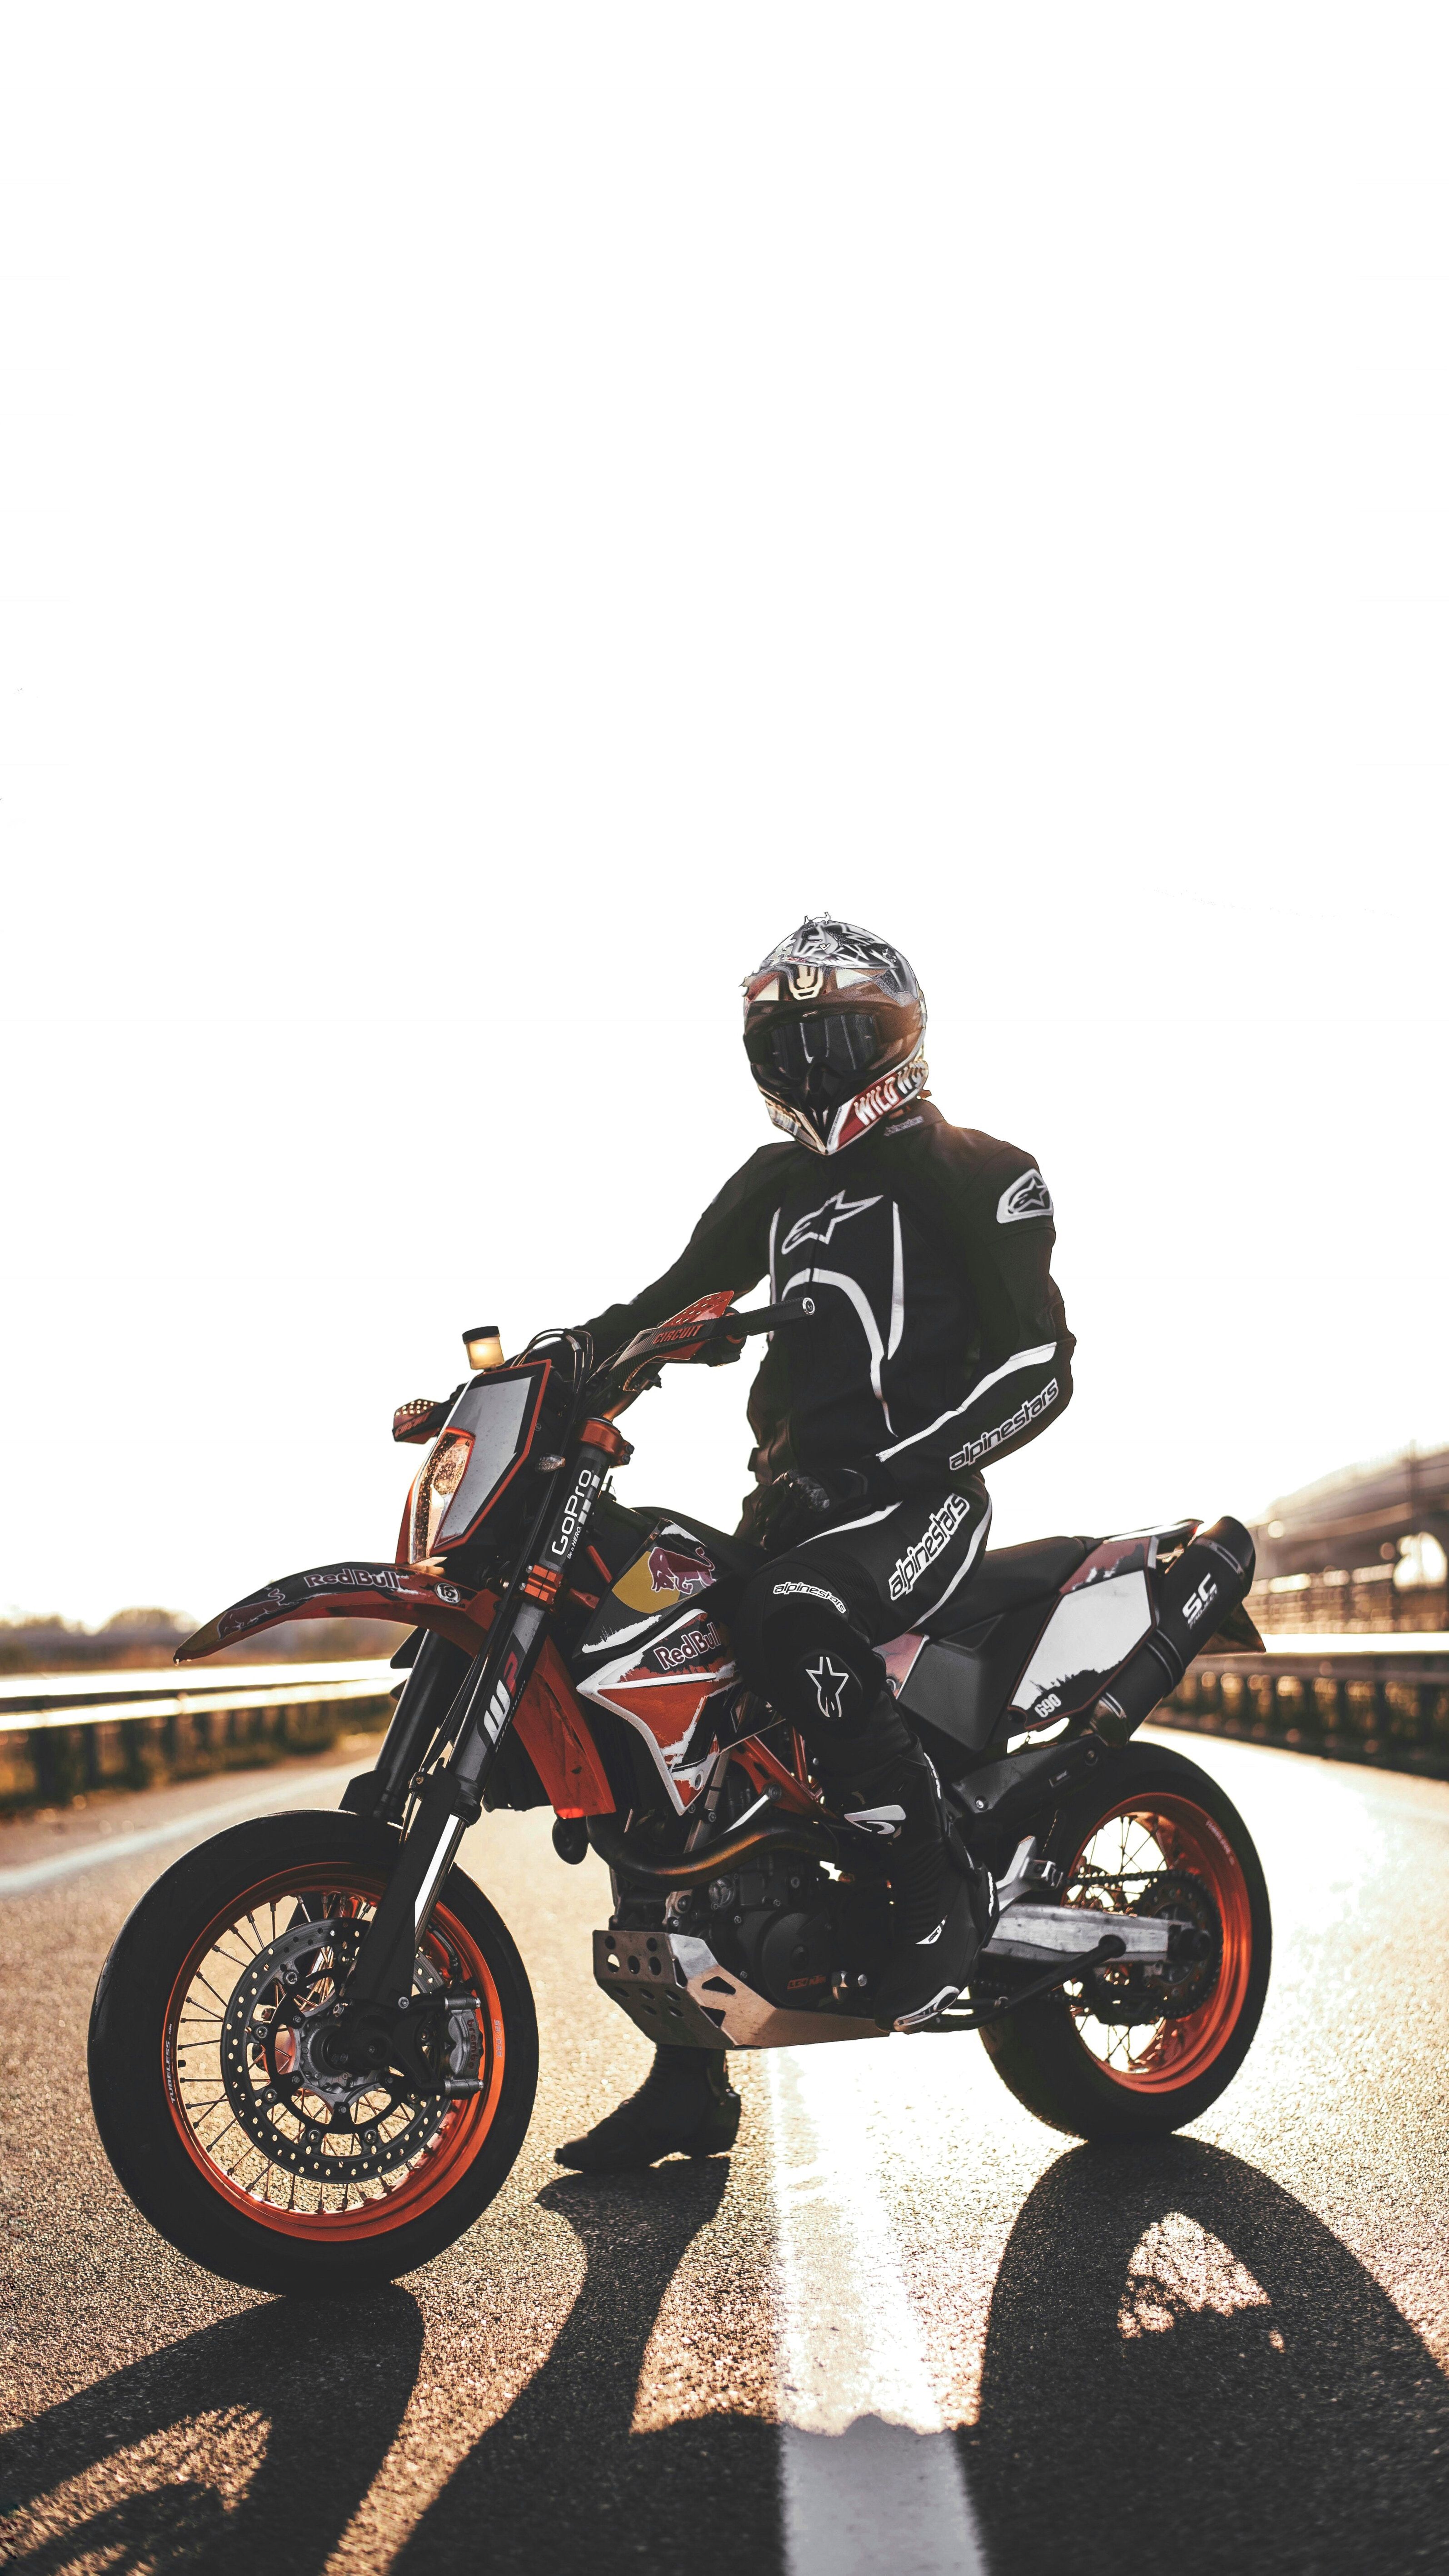 Wallpaper, motorcyclist, motorcycle, helmet 3188x5668